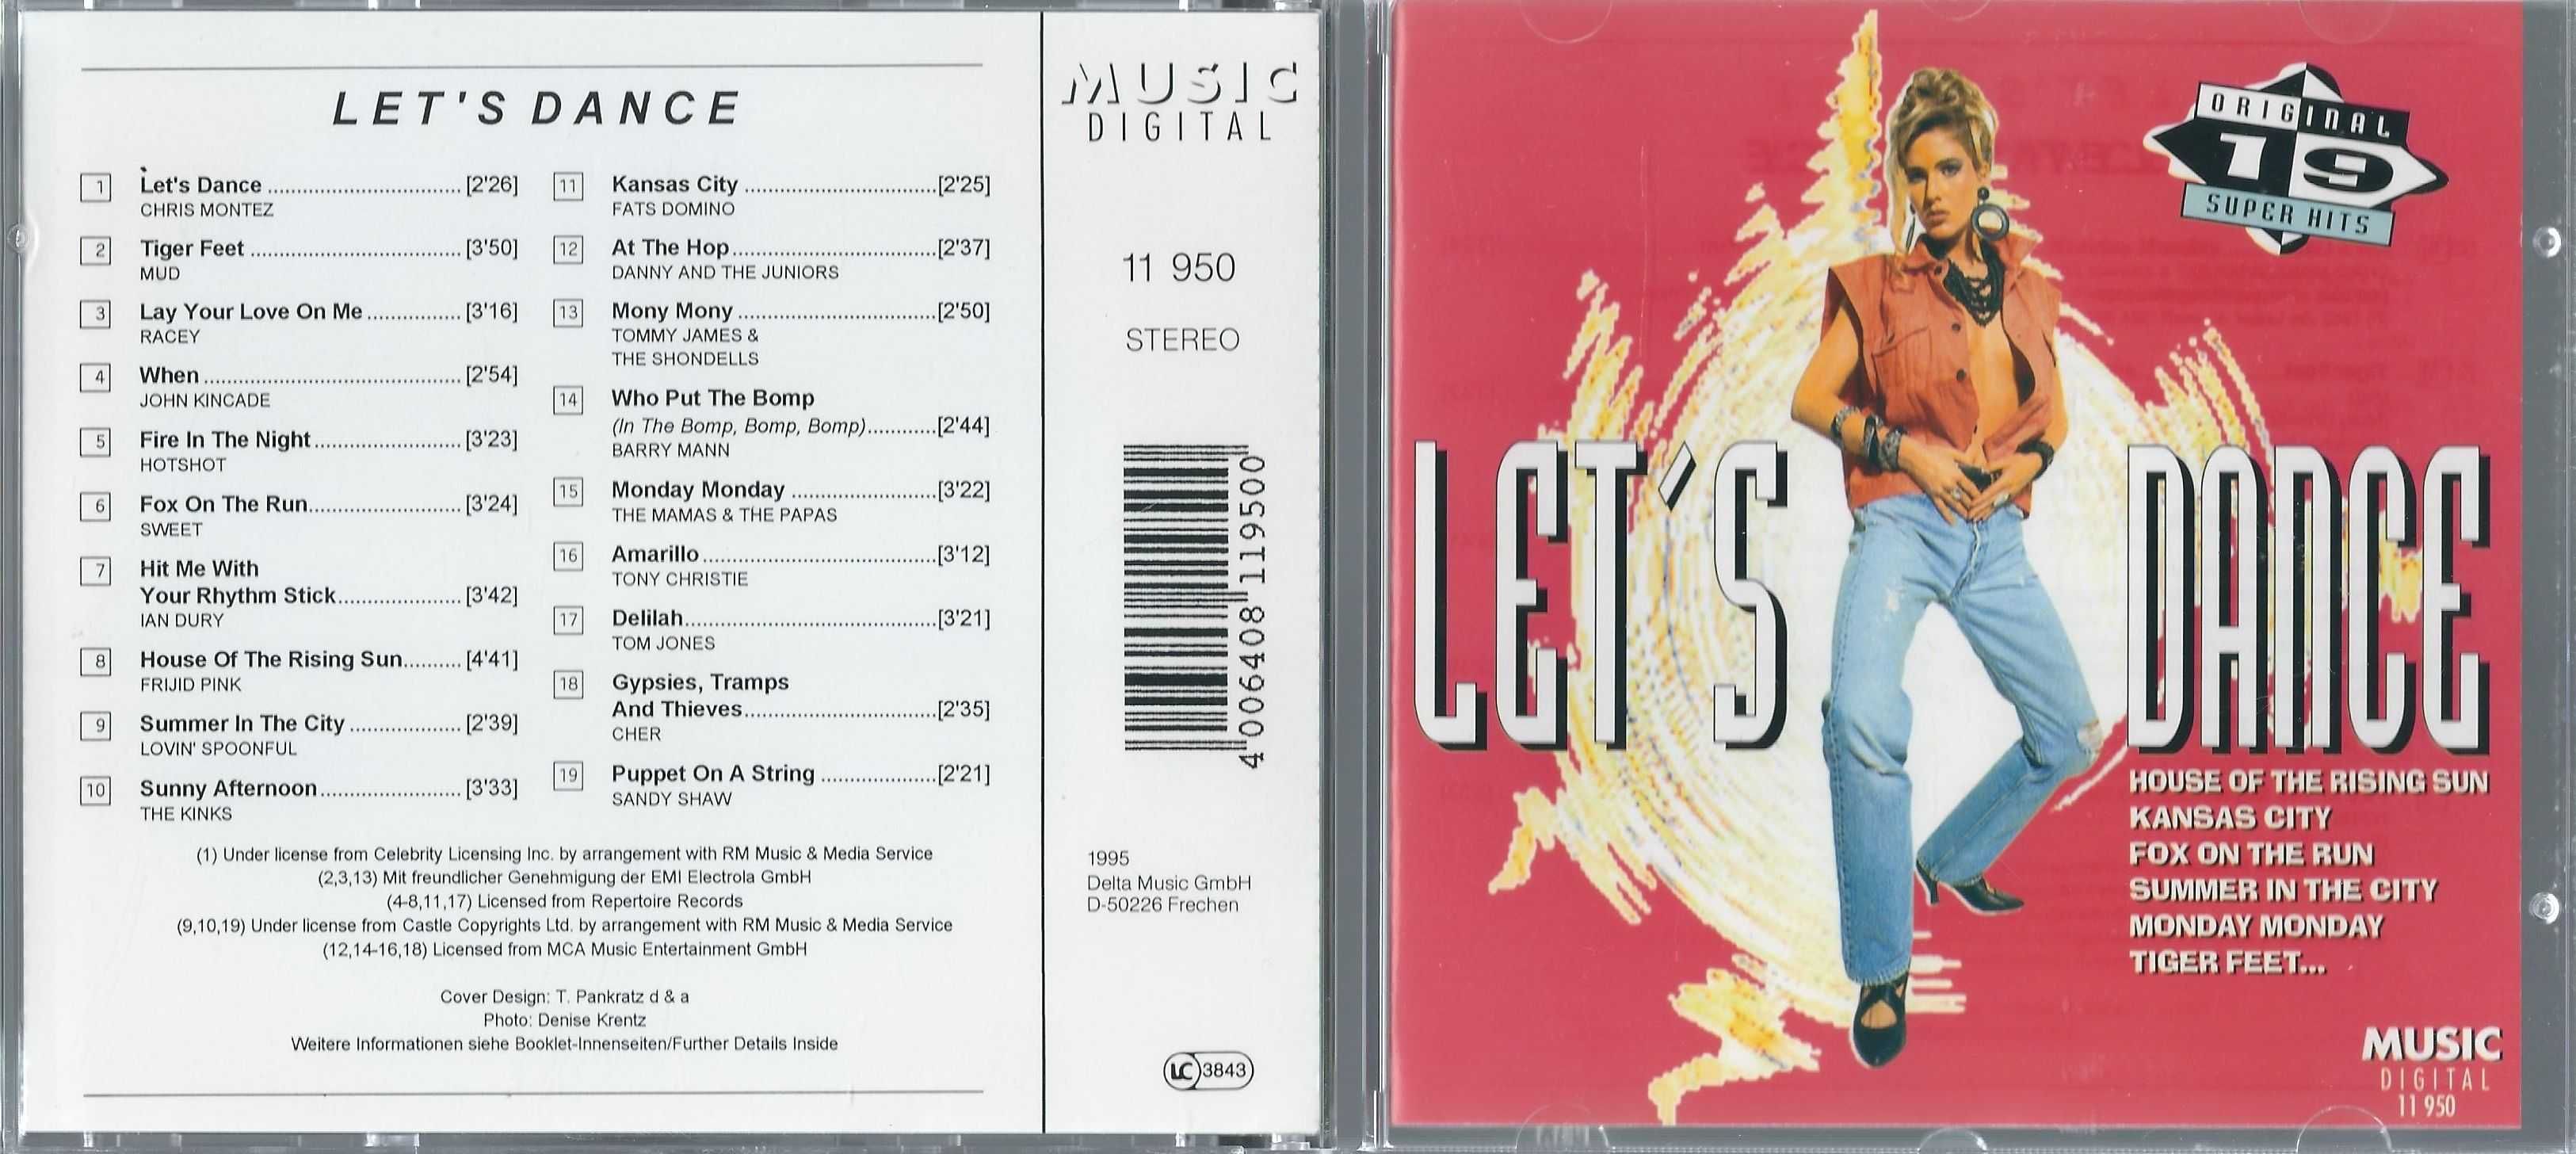 3 CD VA - Let's Dance (1995) (Music Digital)